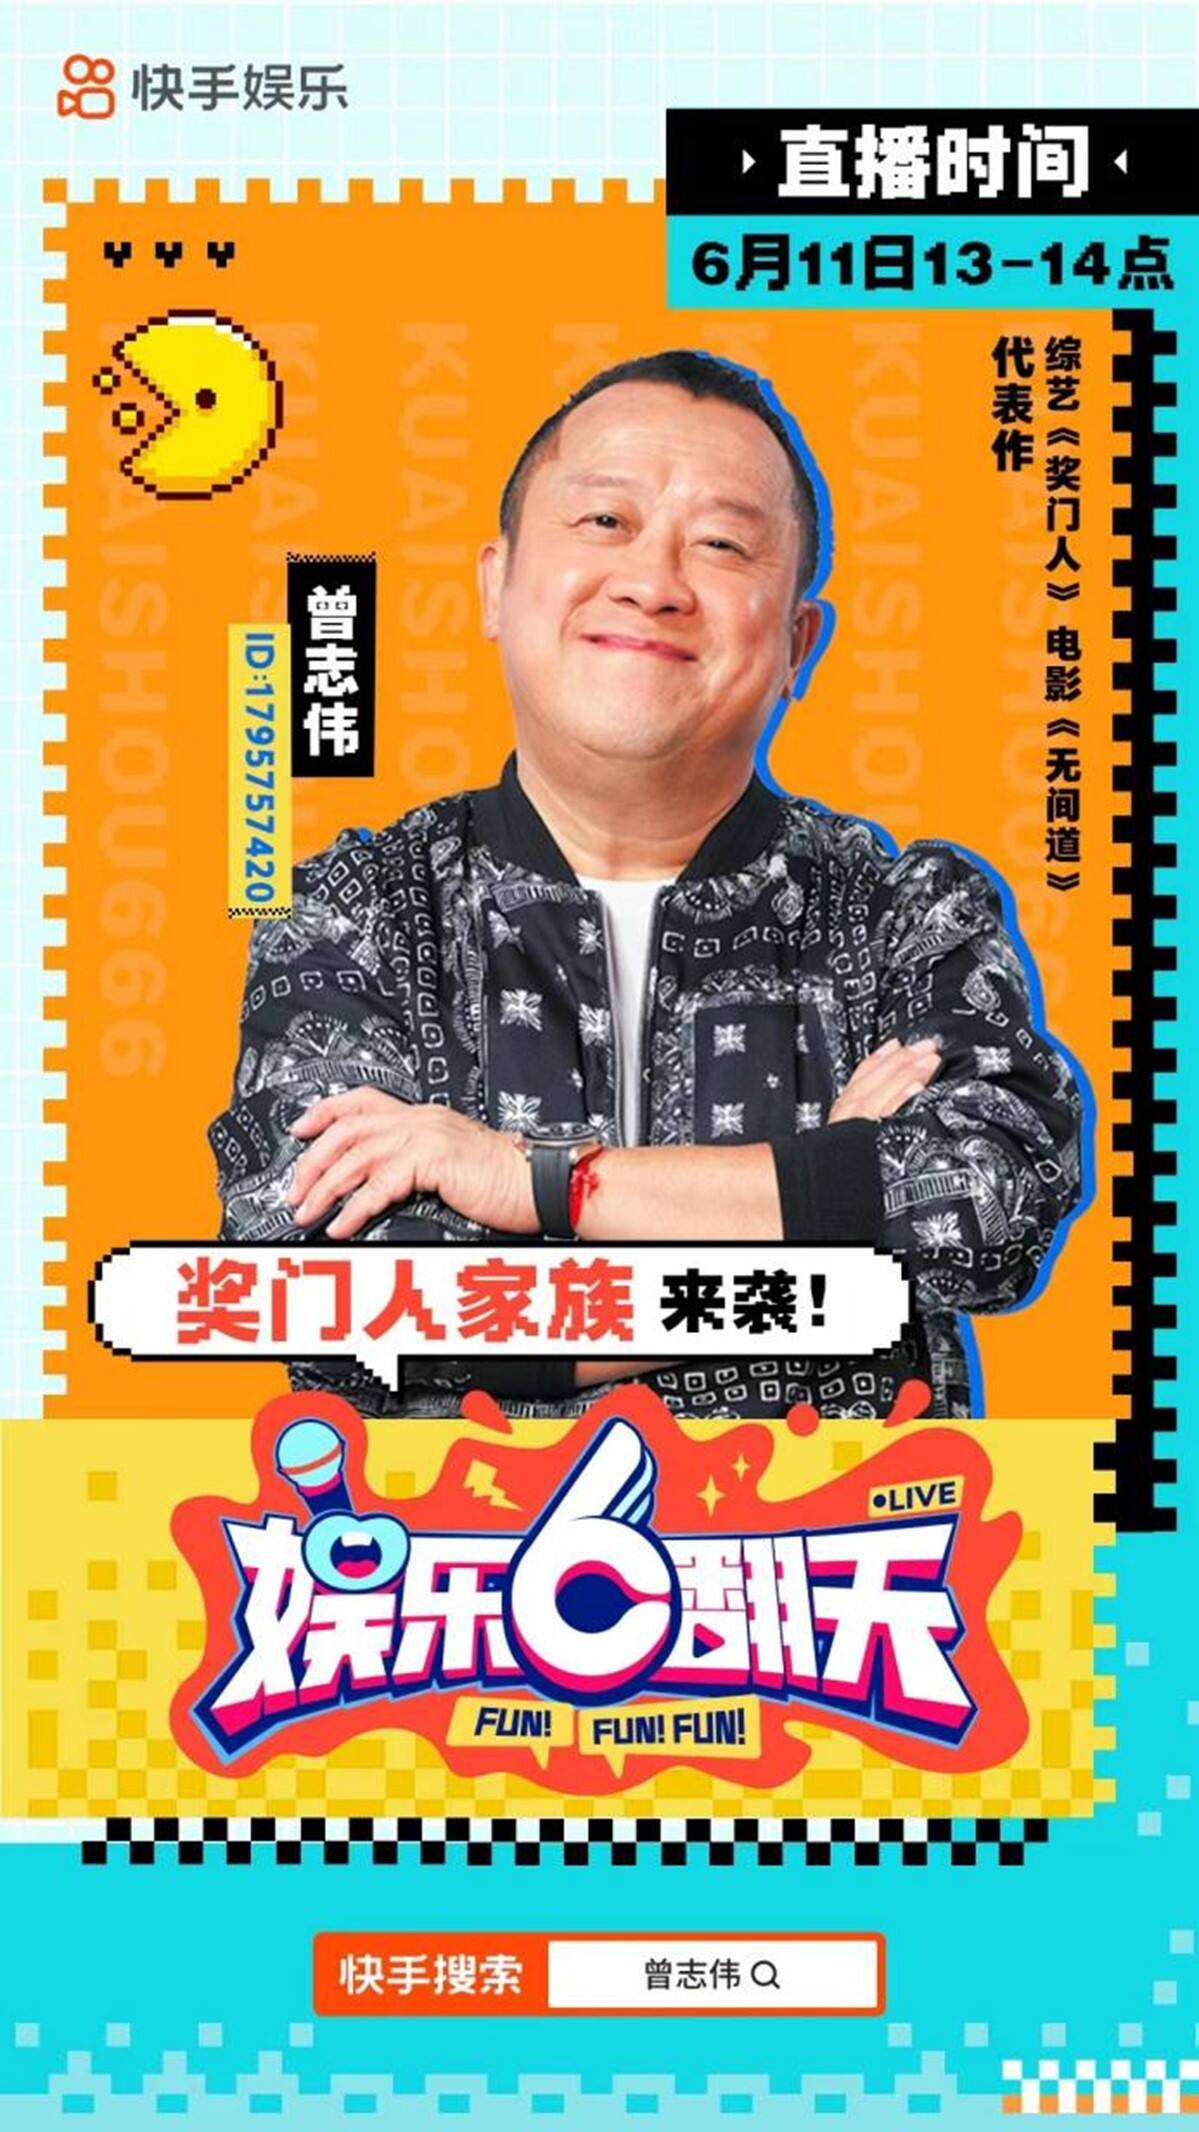 曾志伟快手直播首秀定档6月11日，TVB明星与快手达人齐聚嗨翻天